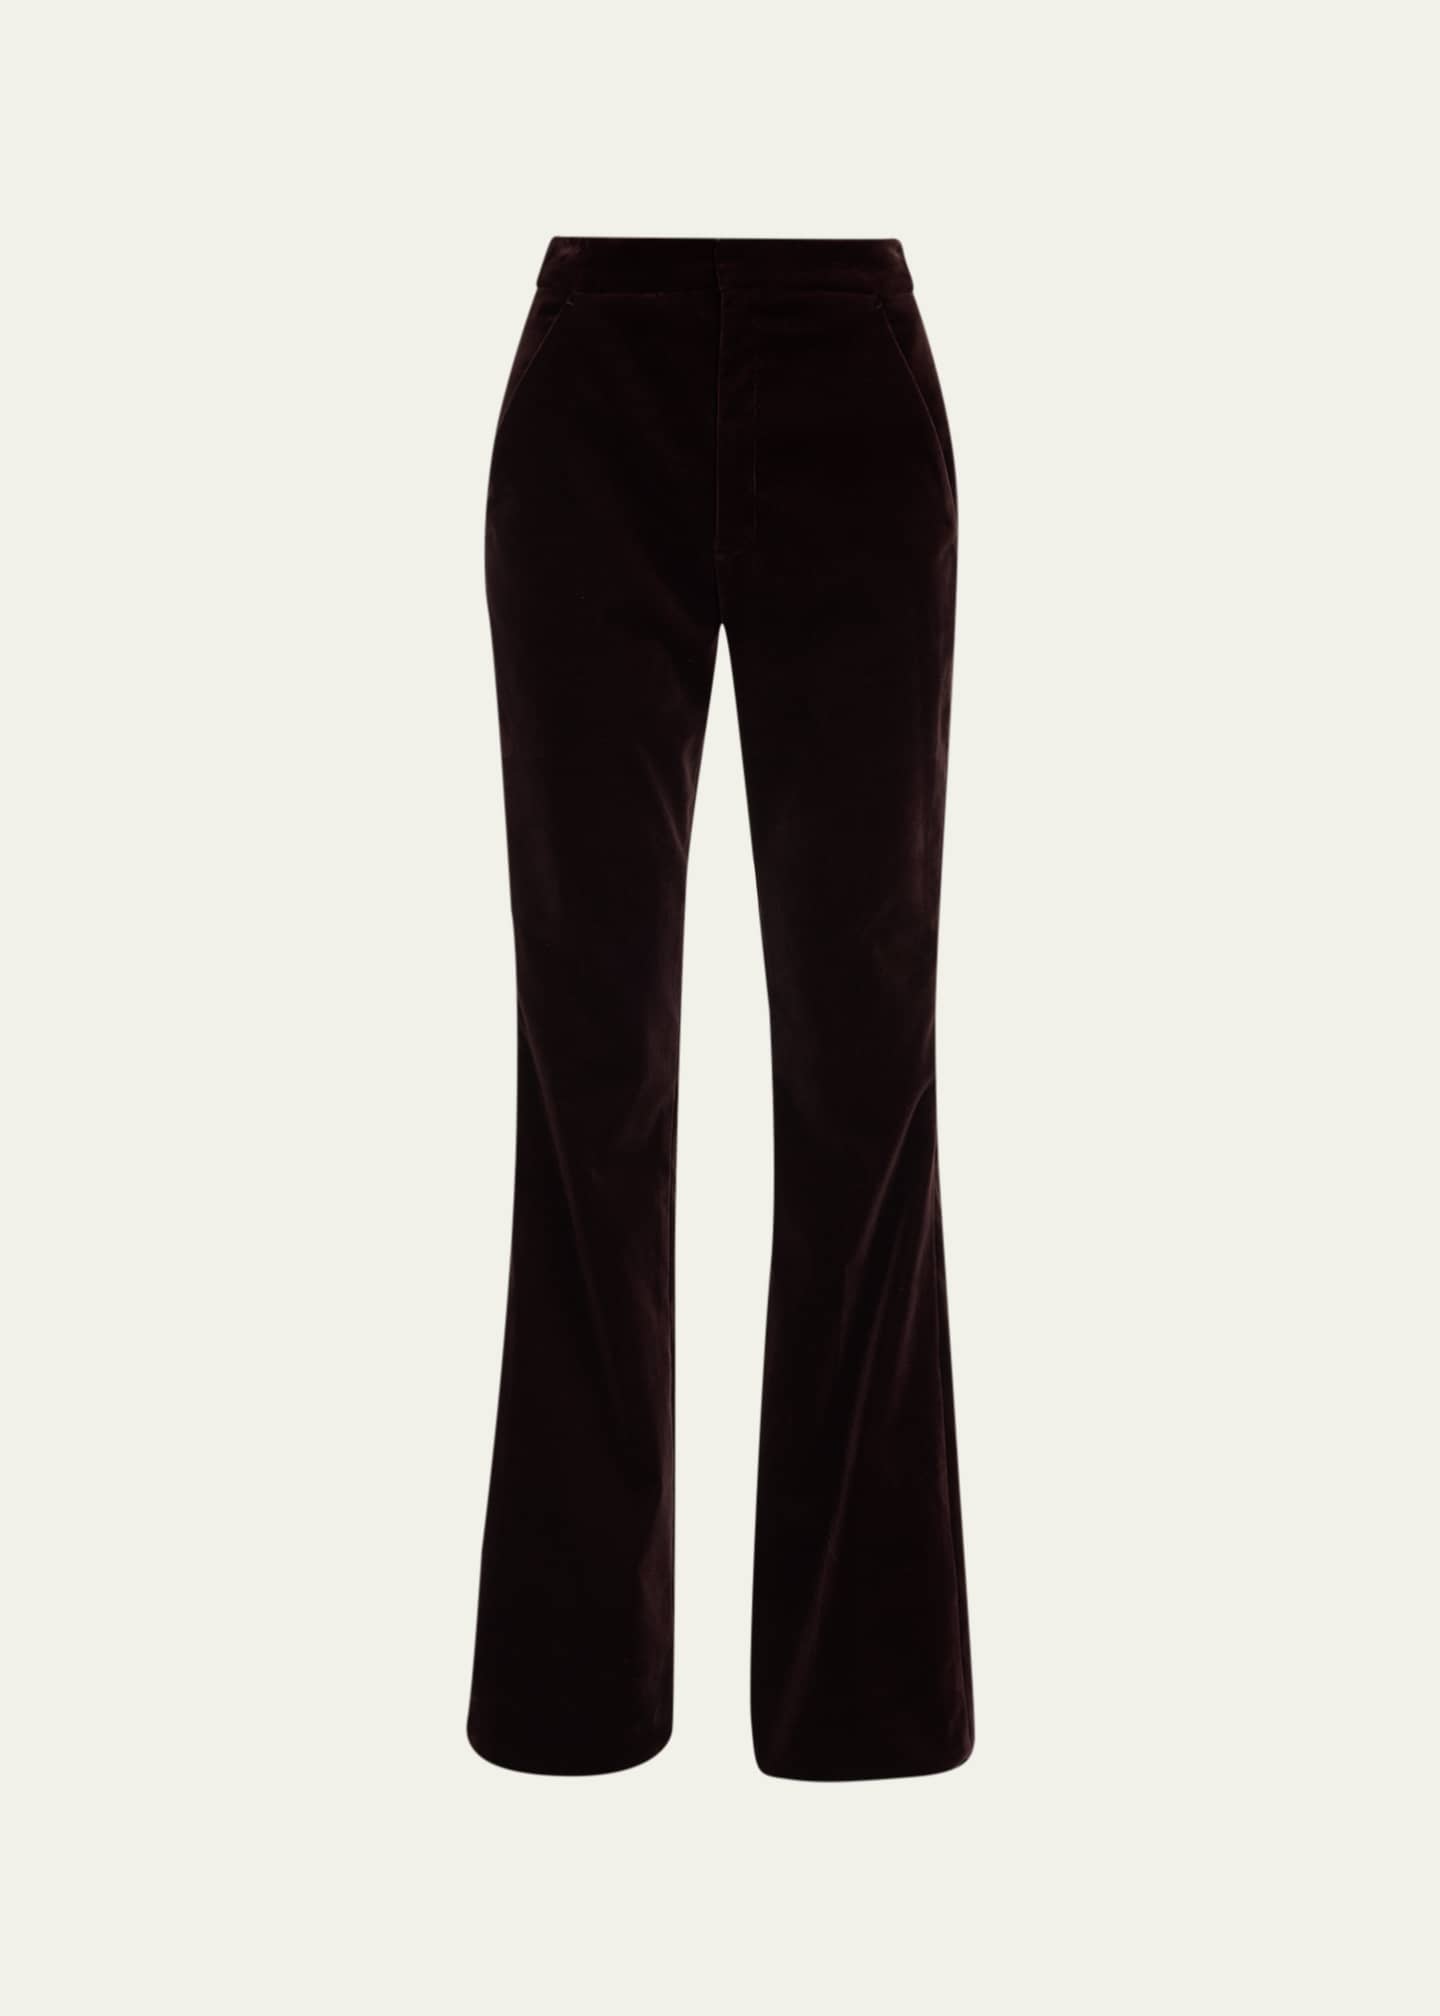 Wide straight velvet pants soerte - スラックス